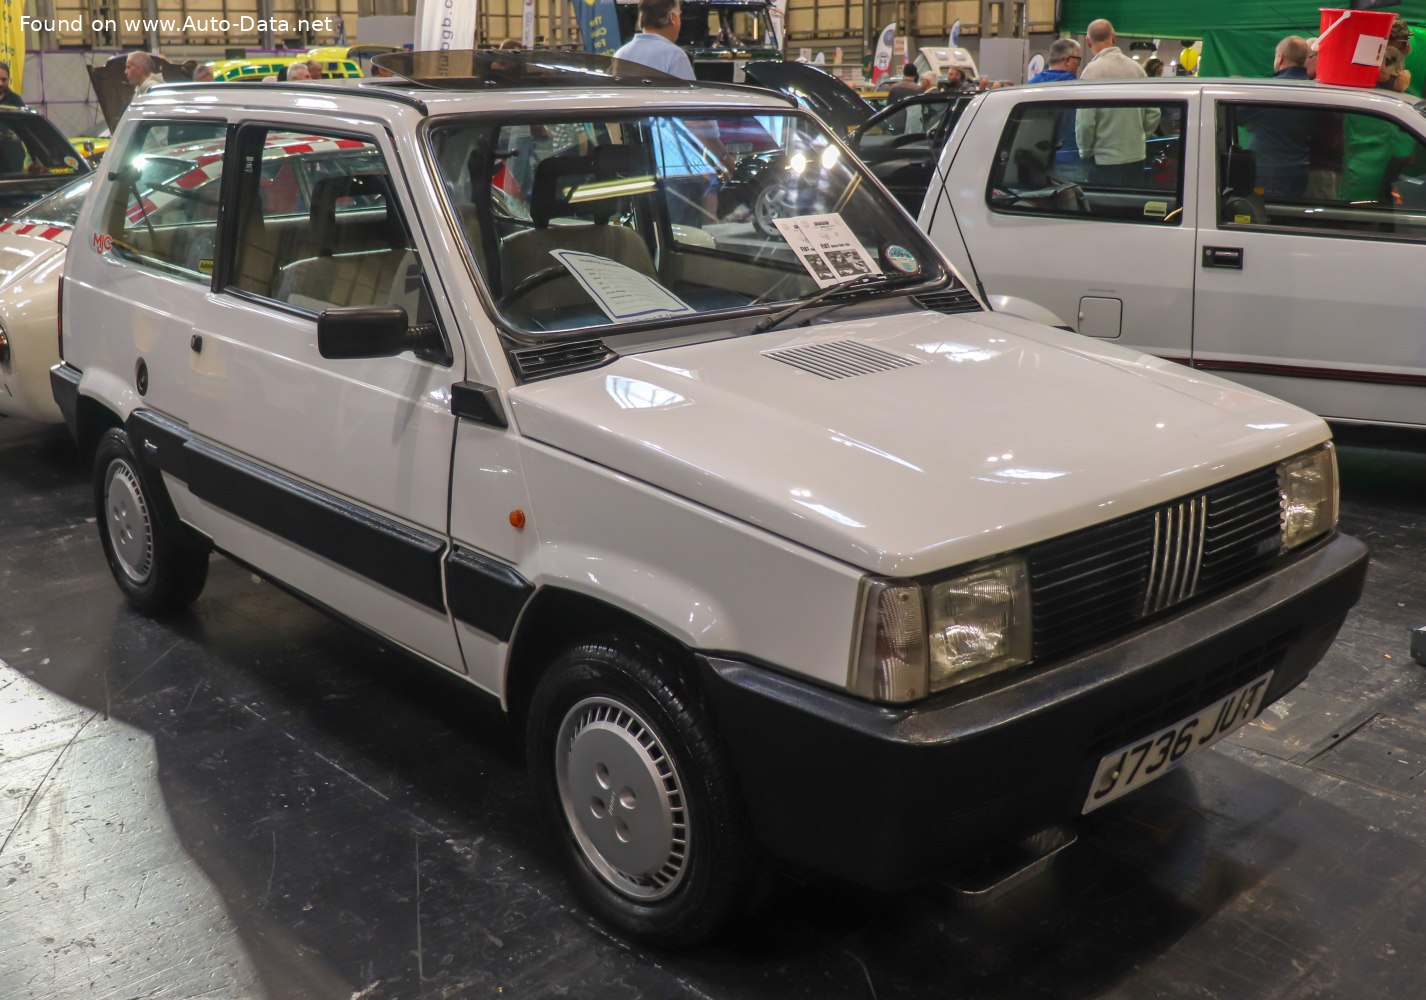 1986 Fiat Panda (ZAF 141, facelift 1986) 750 L (34 Hp)